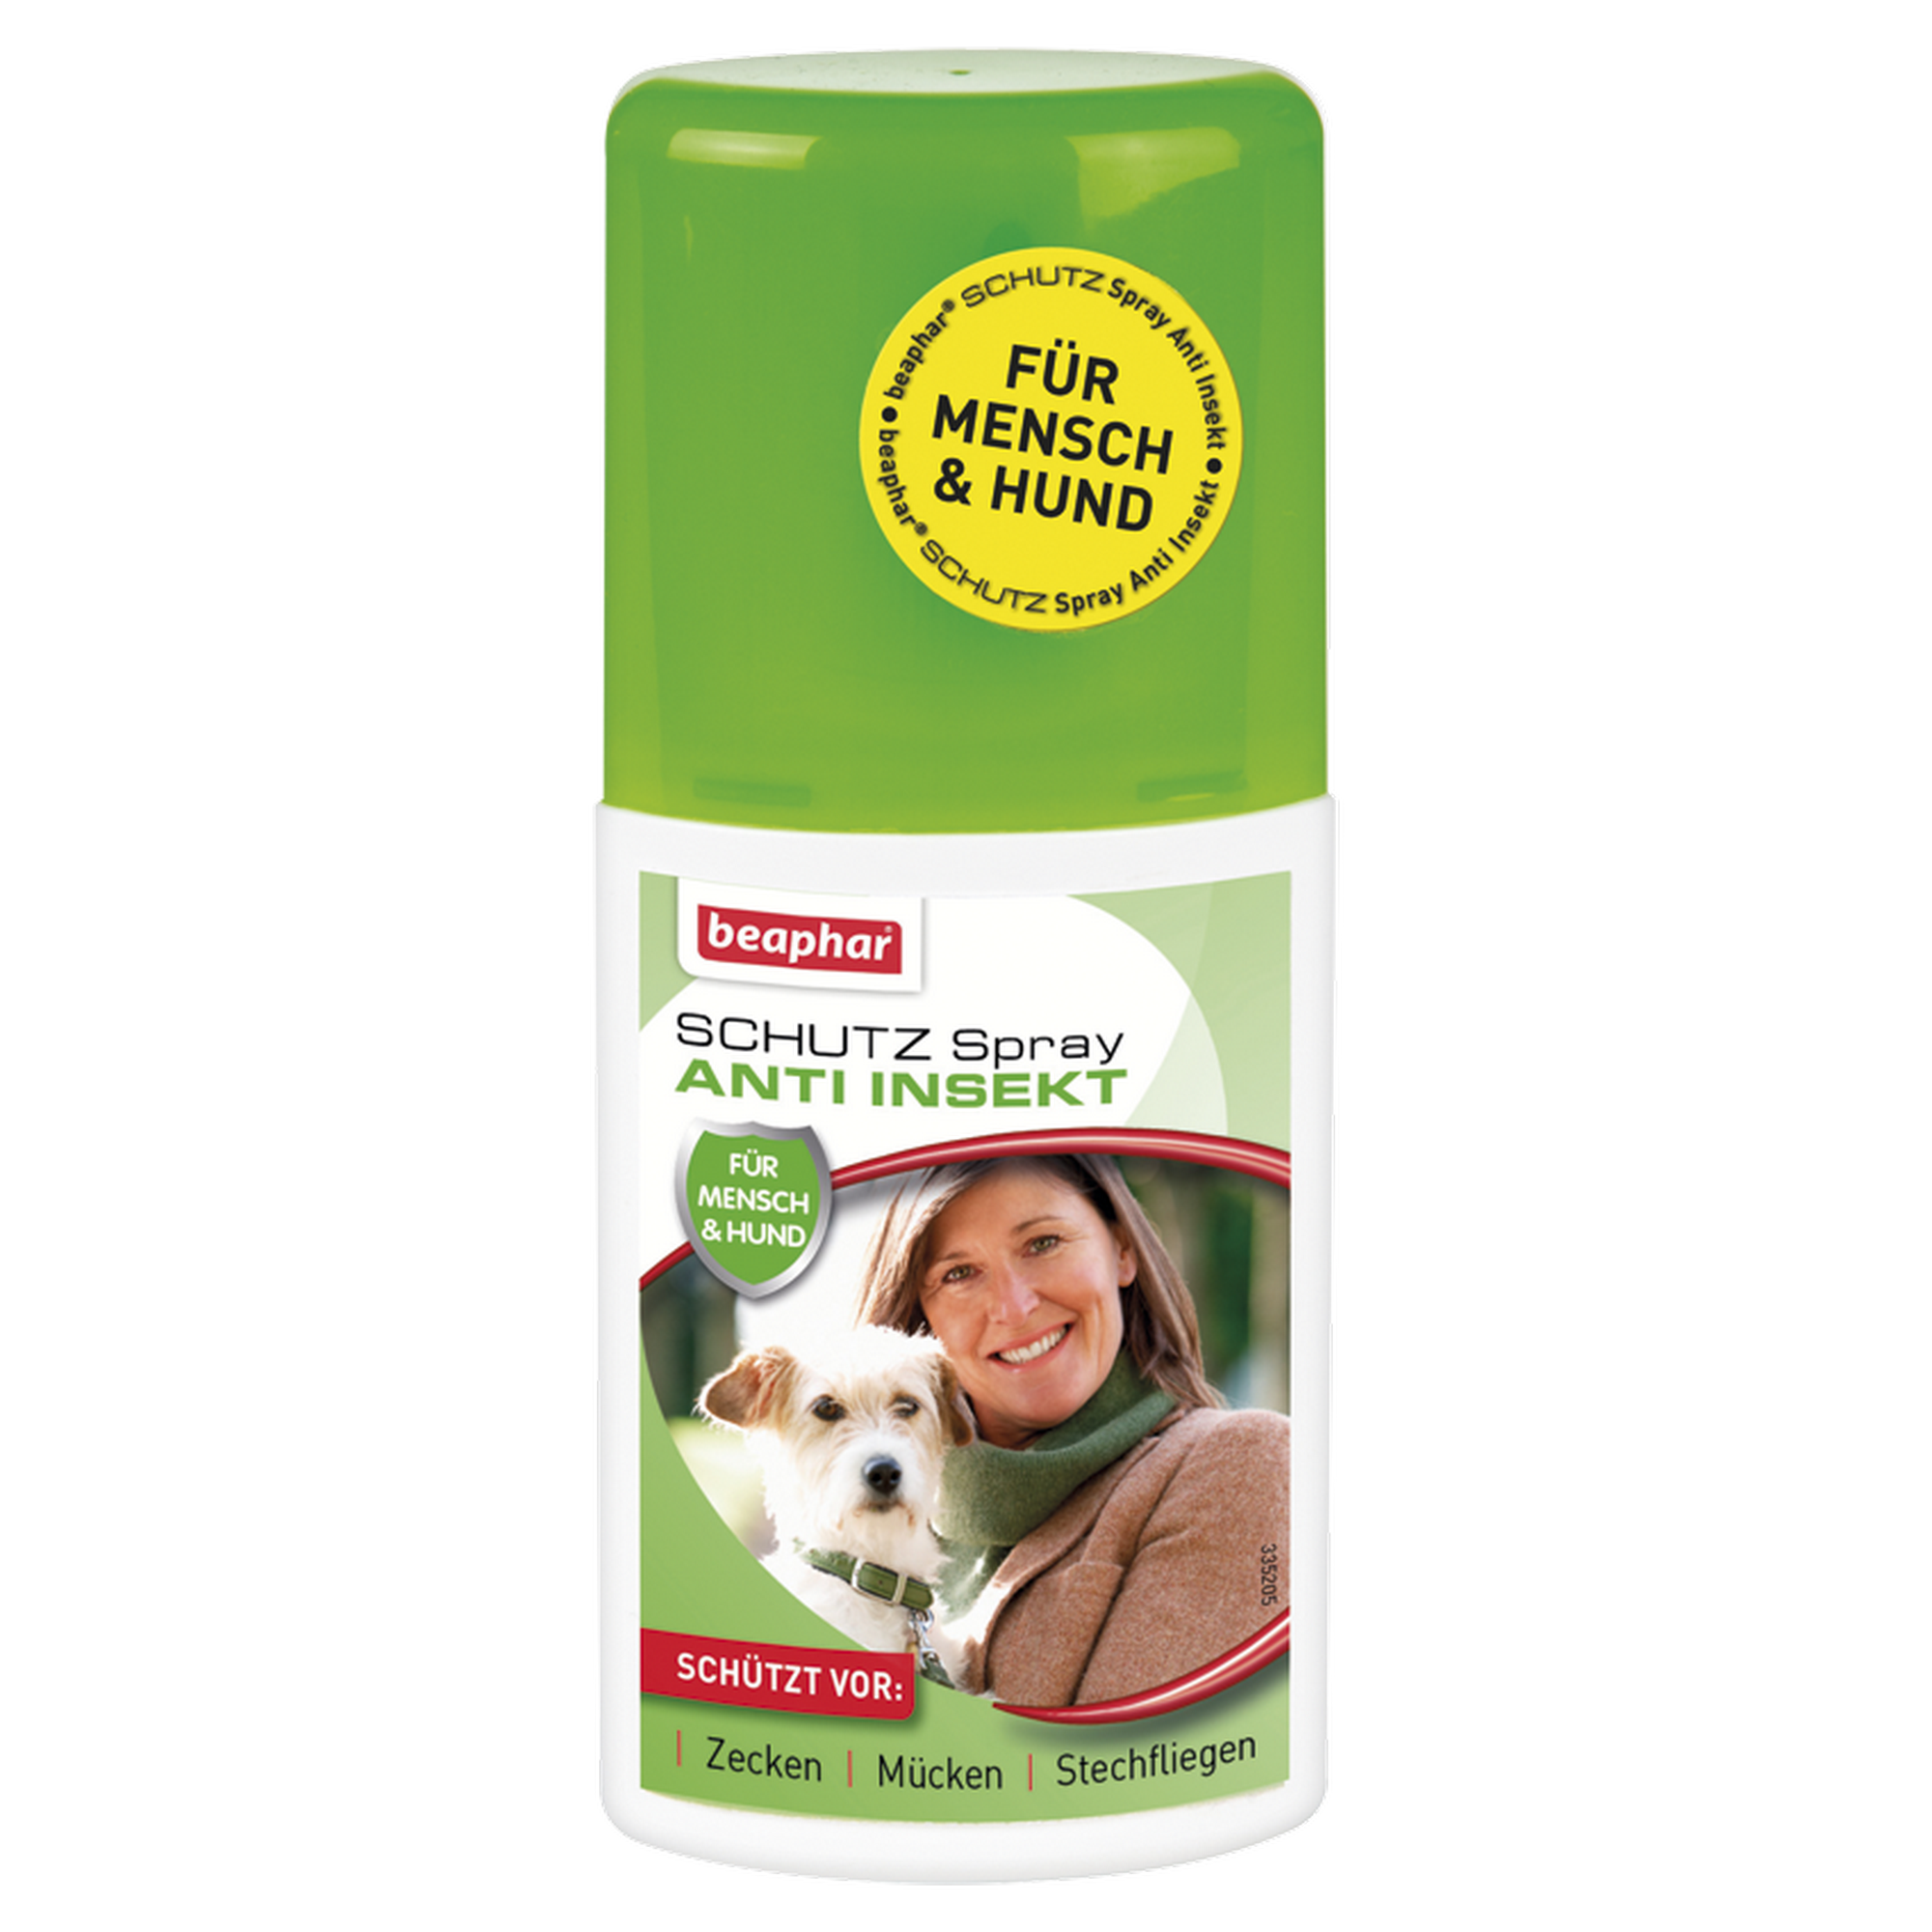 Anti-Insekten-Spray für Mensch & Hund 125 ml + product picture